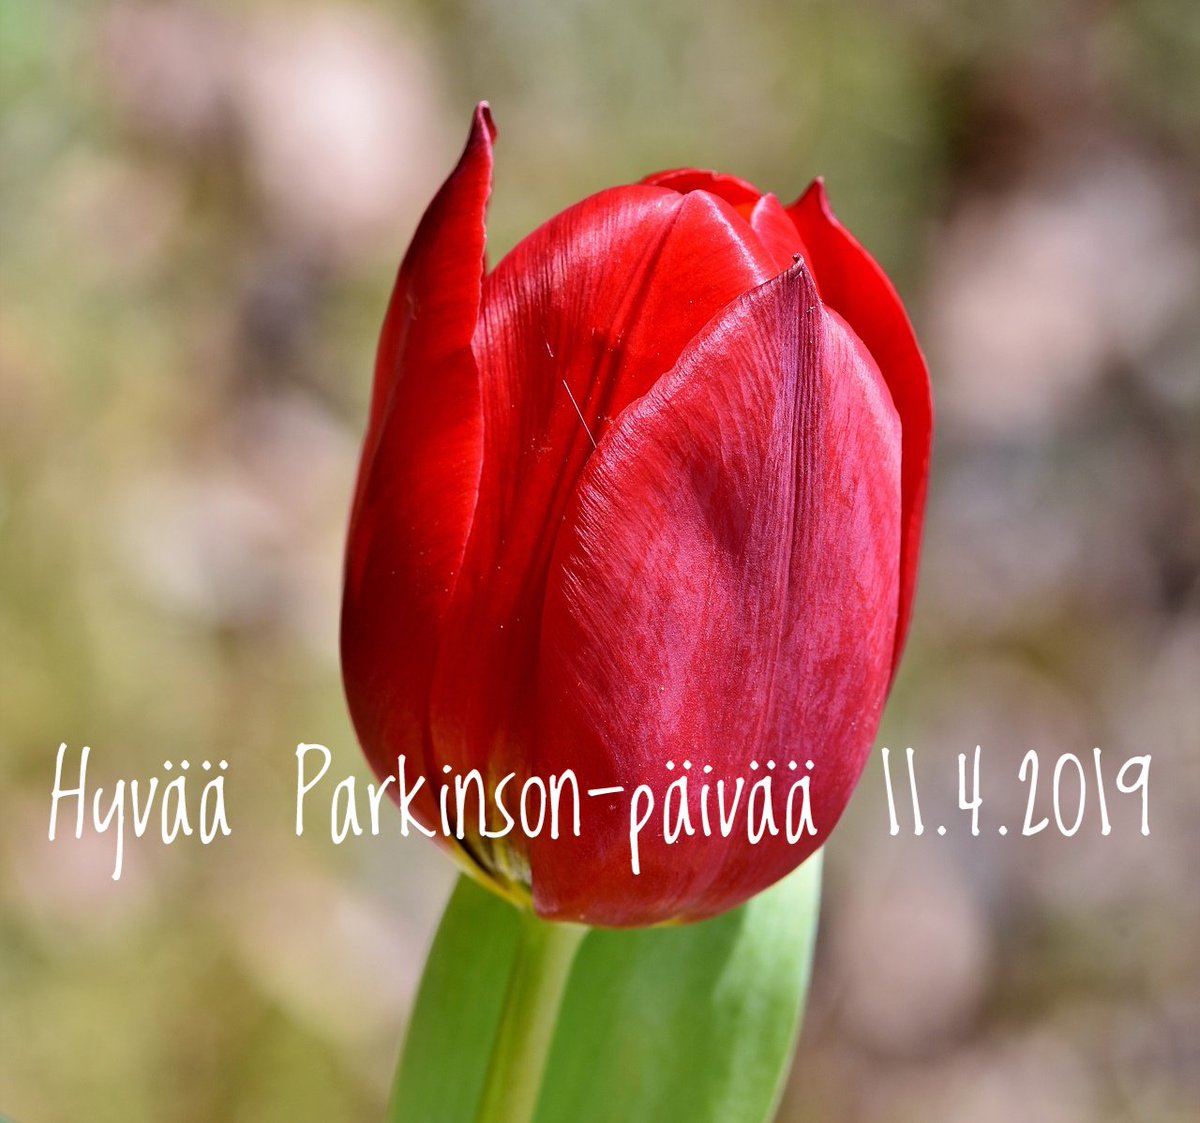 Punainen tulppaani on Parkinson-yhteisöjen yhteinen symboli ympäri maailman. Samalla se yhdistää niitä 16 000 suomalaista, jotka sairastavat Parkinsonin tautia. #parkinsonpäivä #parkinsonintauti #liikehäiriösairaudet #UniteForParkinsons Lue teemapäivästä: bit.ly/2UaukI8